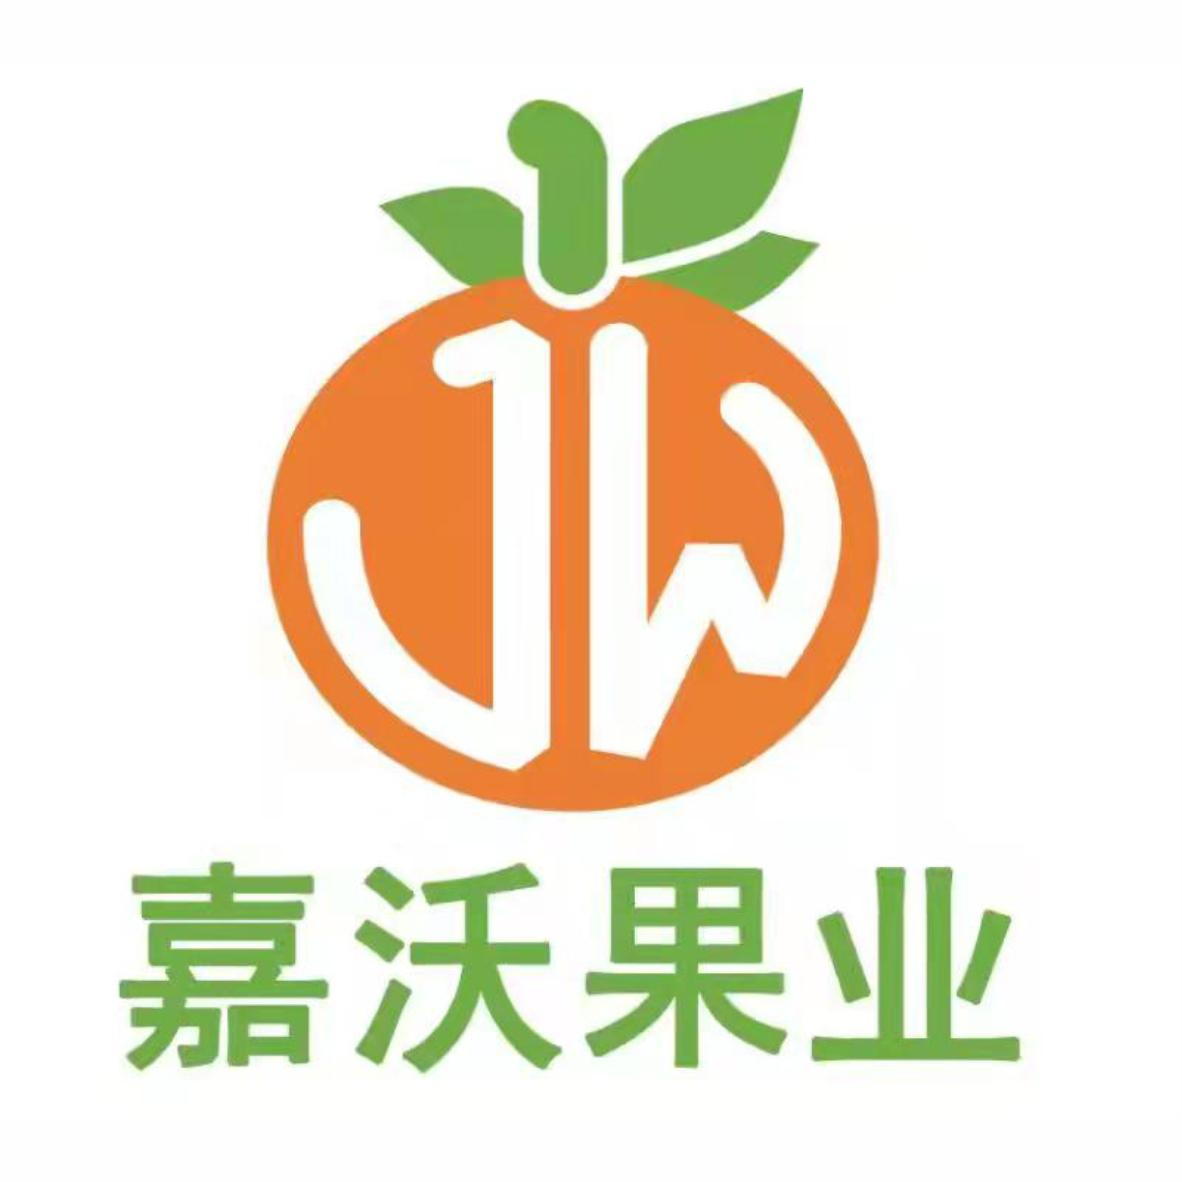 商标文字嘉沃果业商标号 60587,商标申请人武胜县嘉沃水果种植